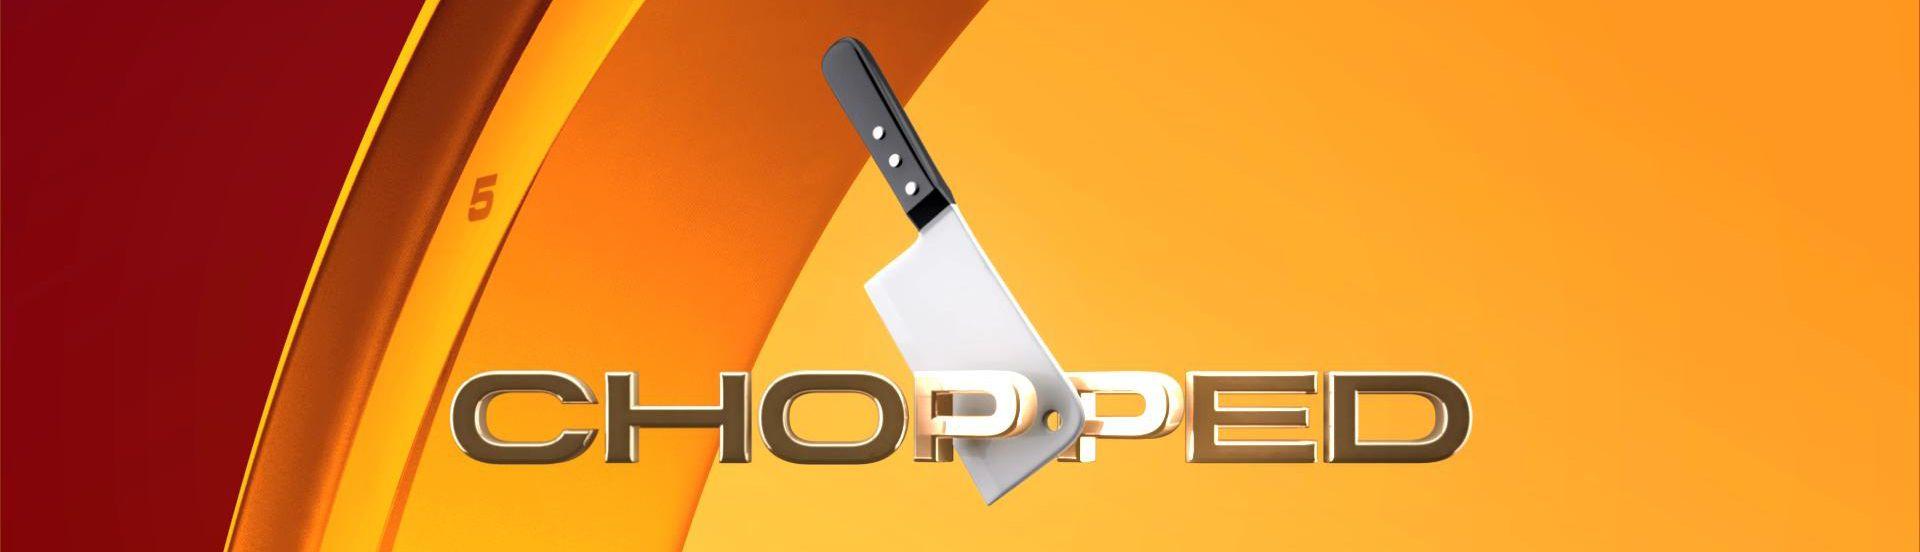 Chopped Logo - Chopped Logos